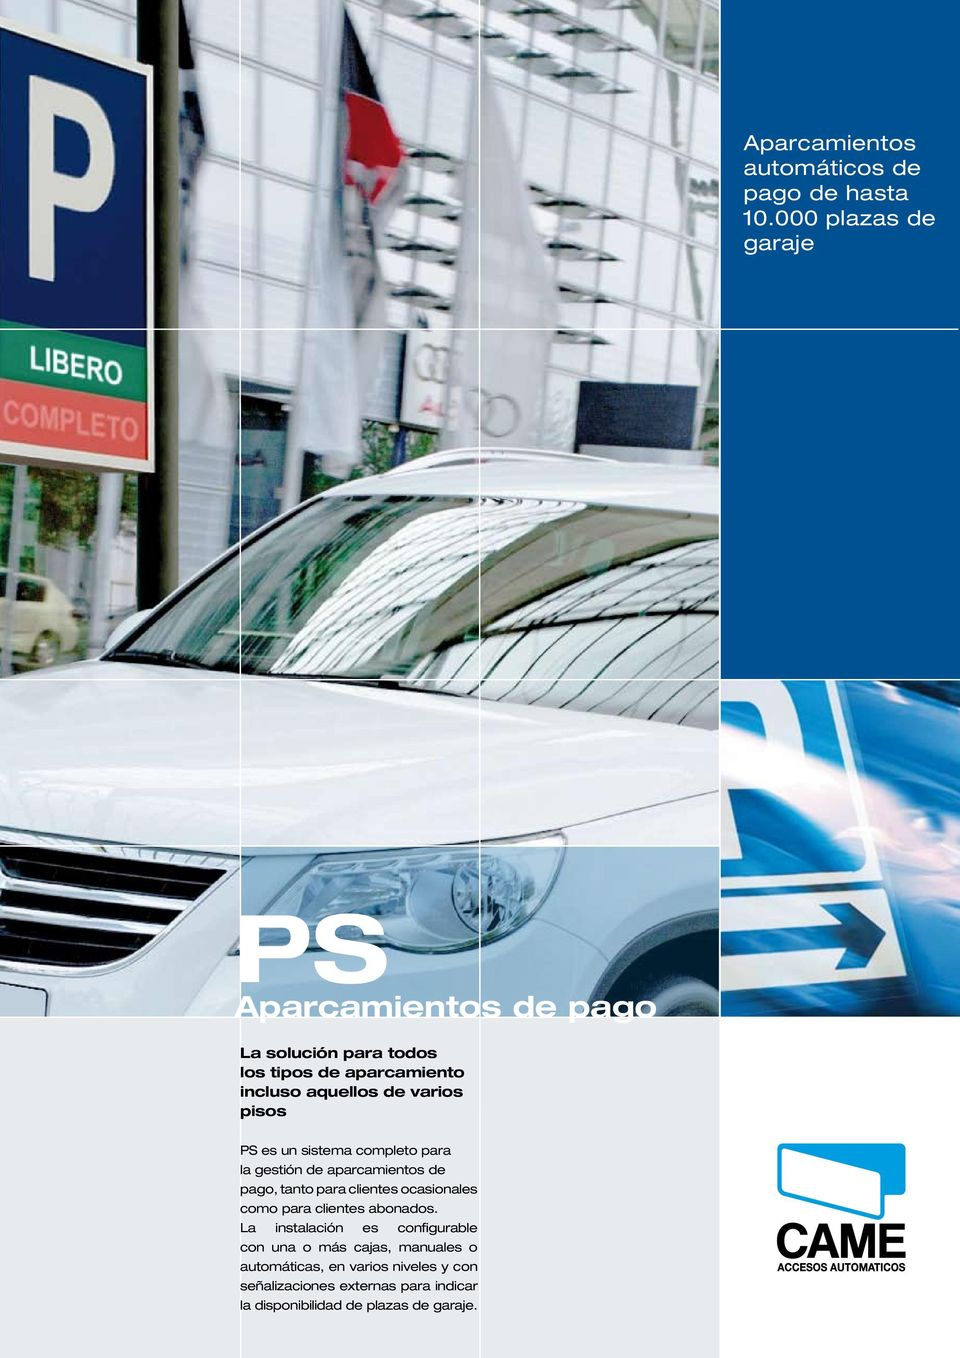 varios pisos PS es un sistema completo para la gestión de aparcamientos de pago, tanto para clientes ocasionales como